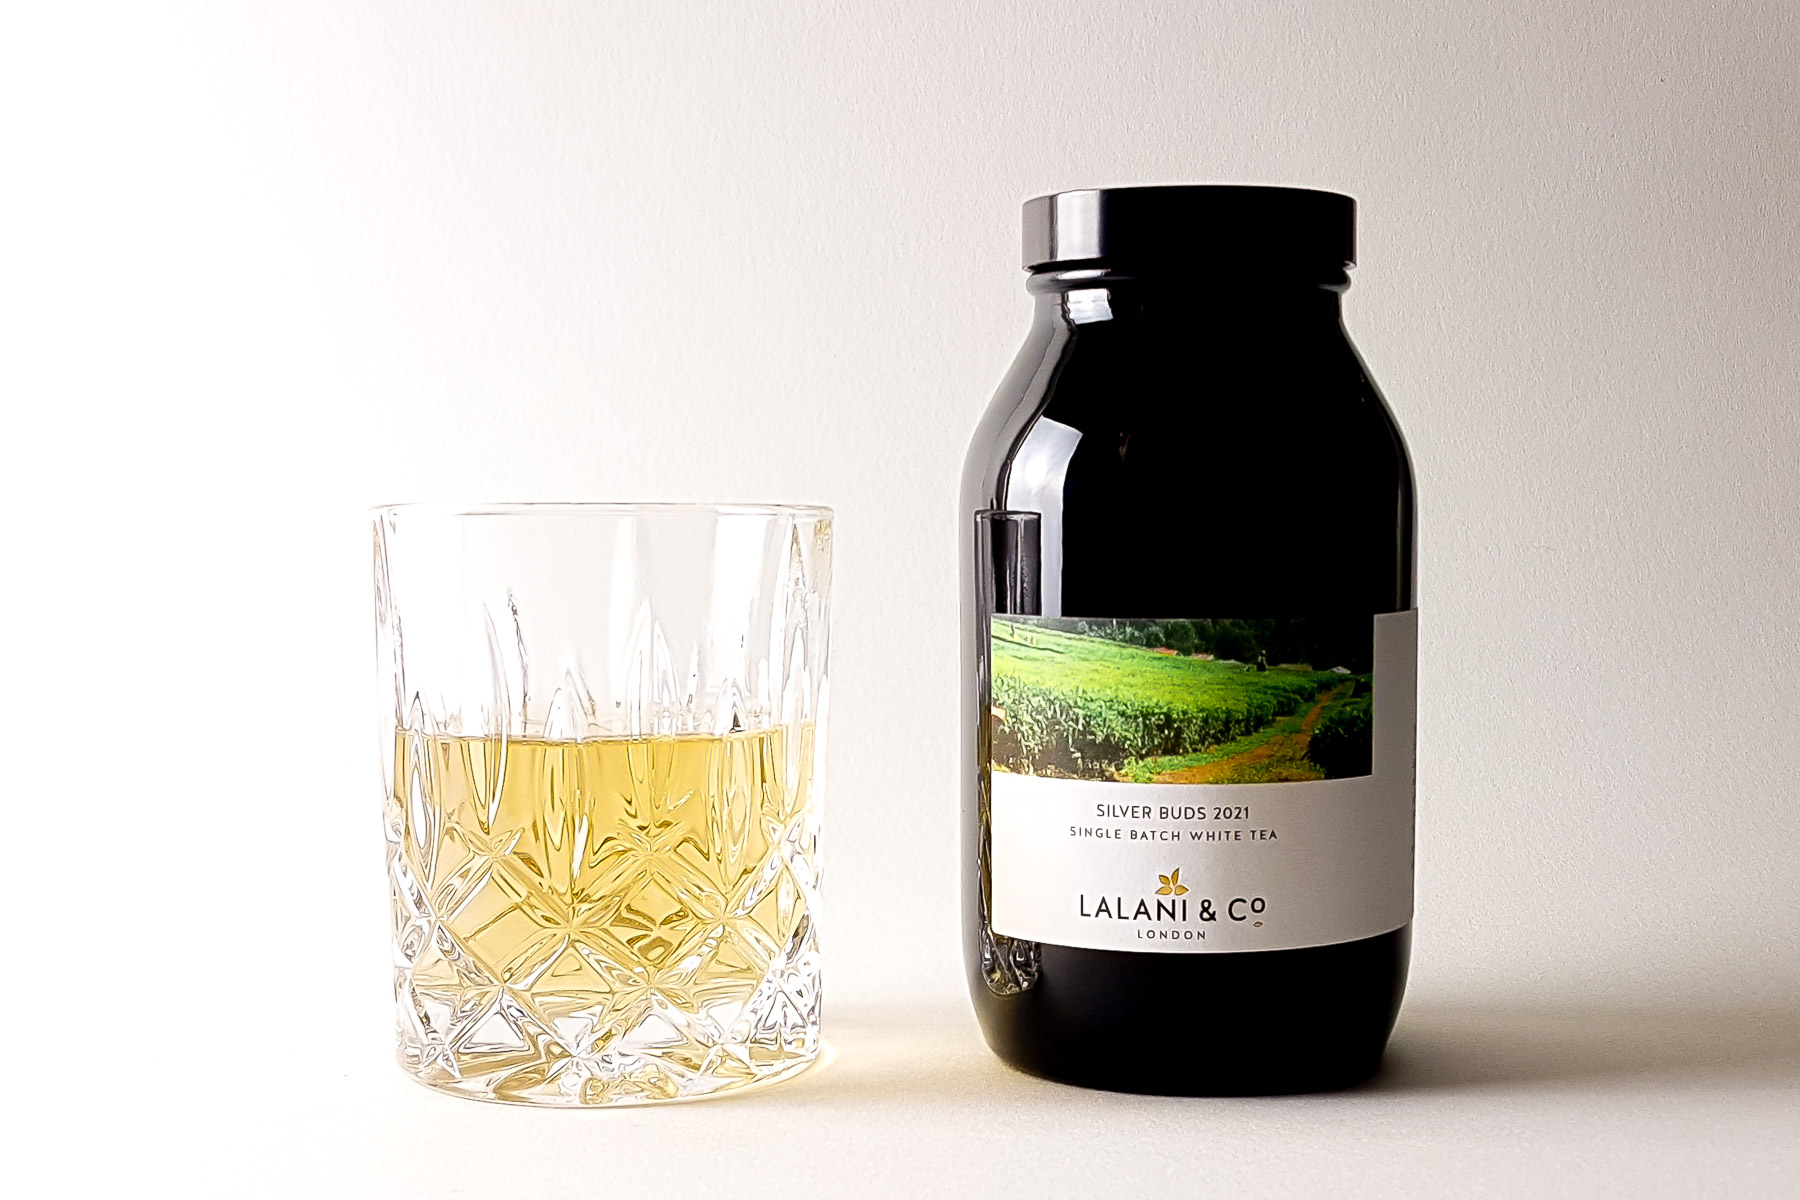 Lalani & Co: Silver Buds 2021 Kenya White Tea